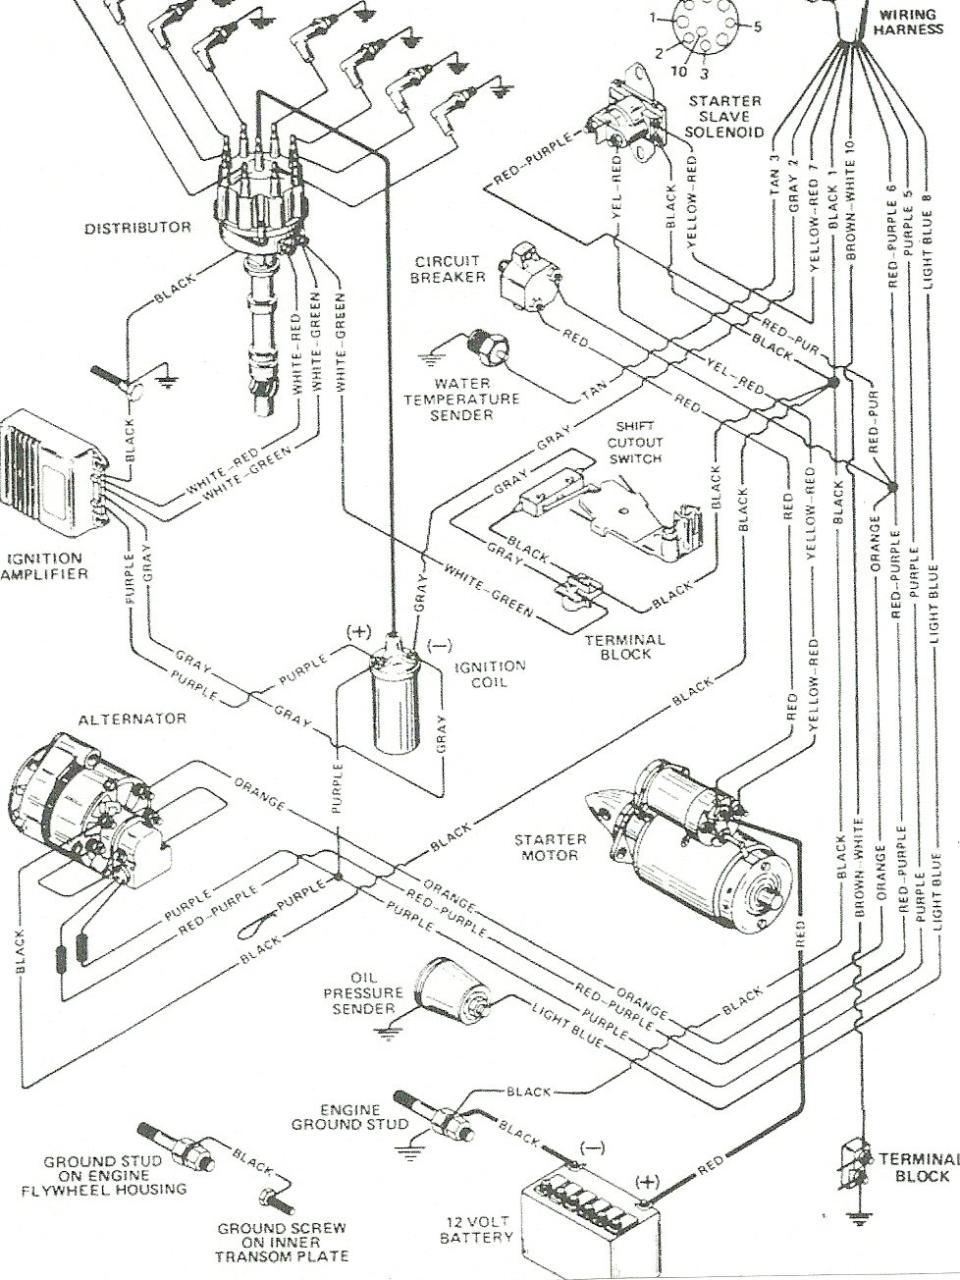 Mercruiser 3.0 Ignition Wiring Diagram